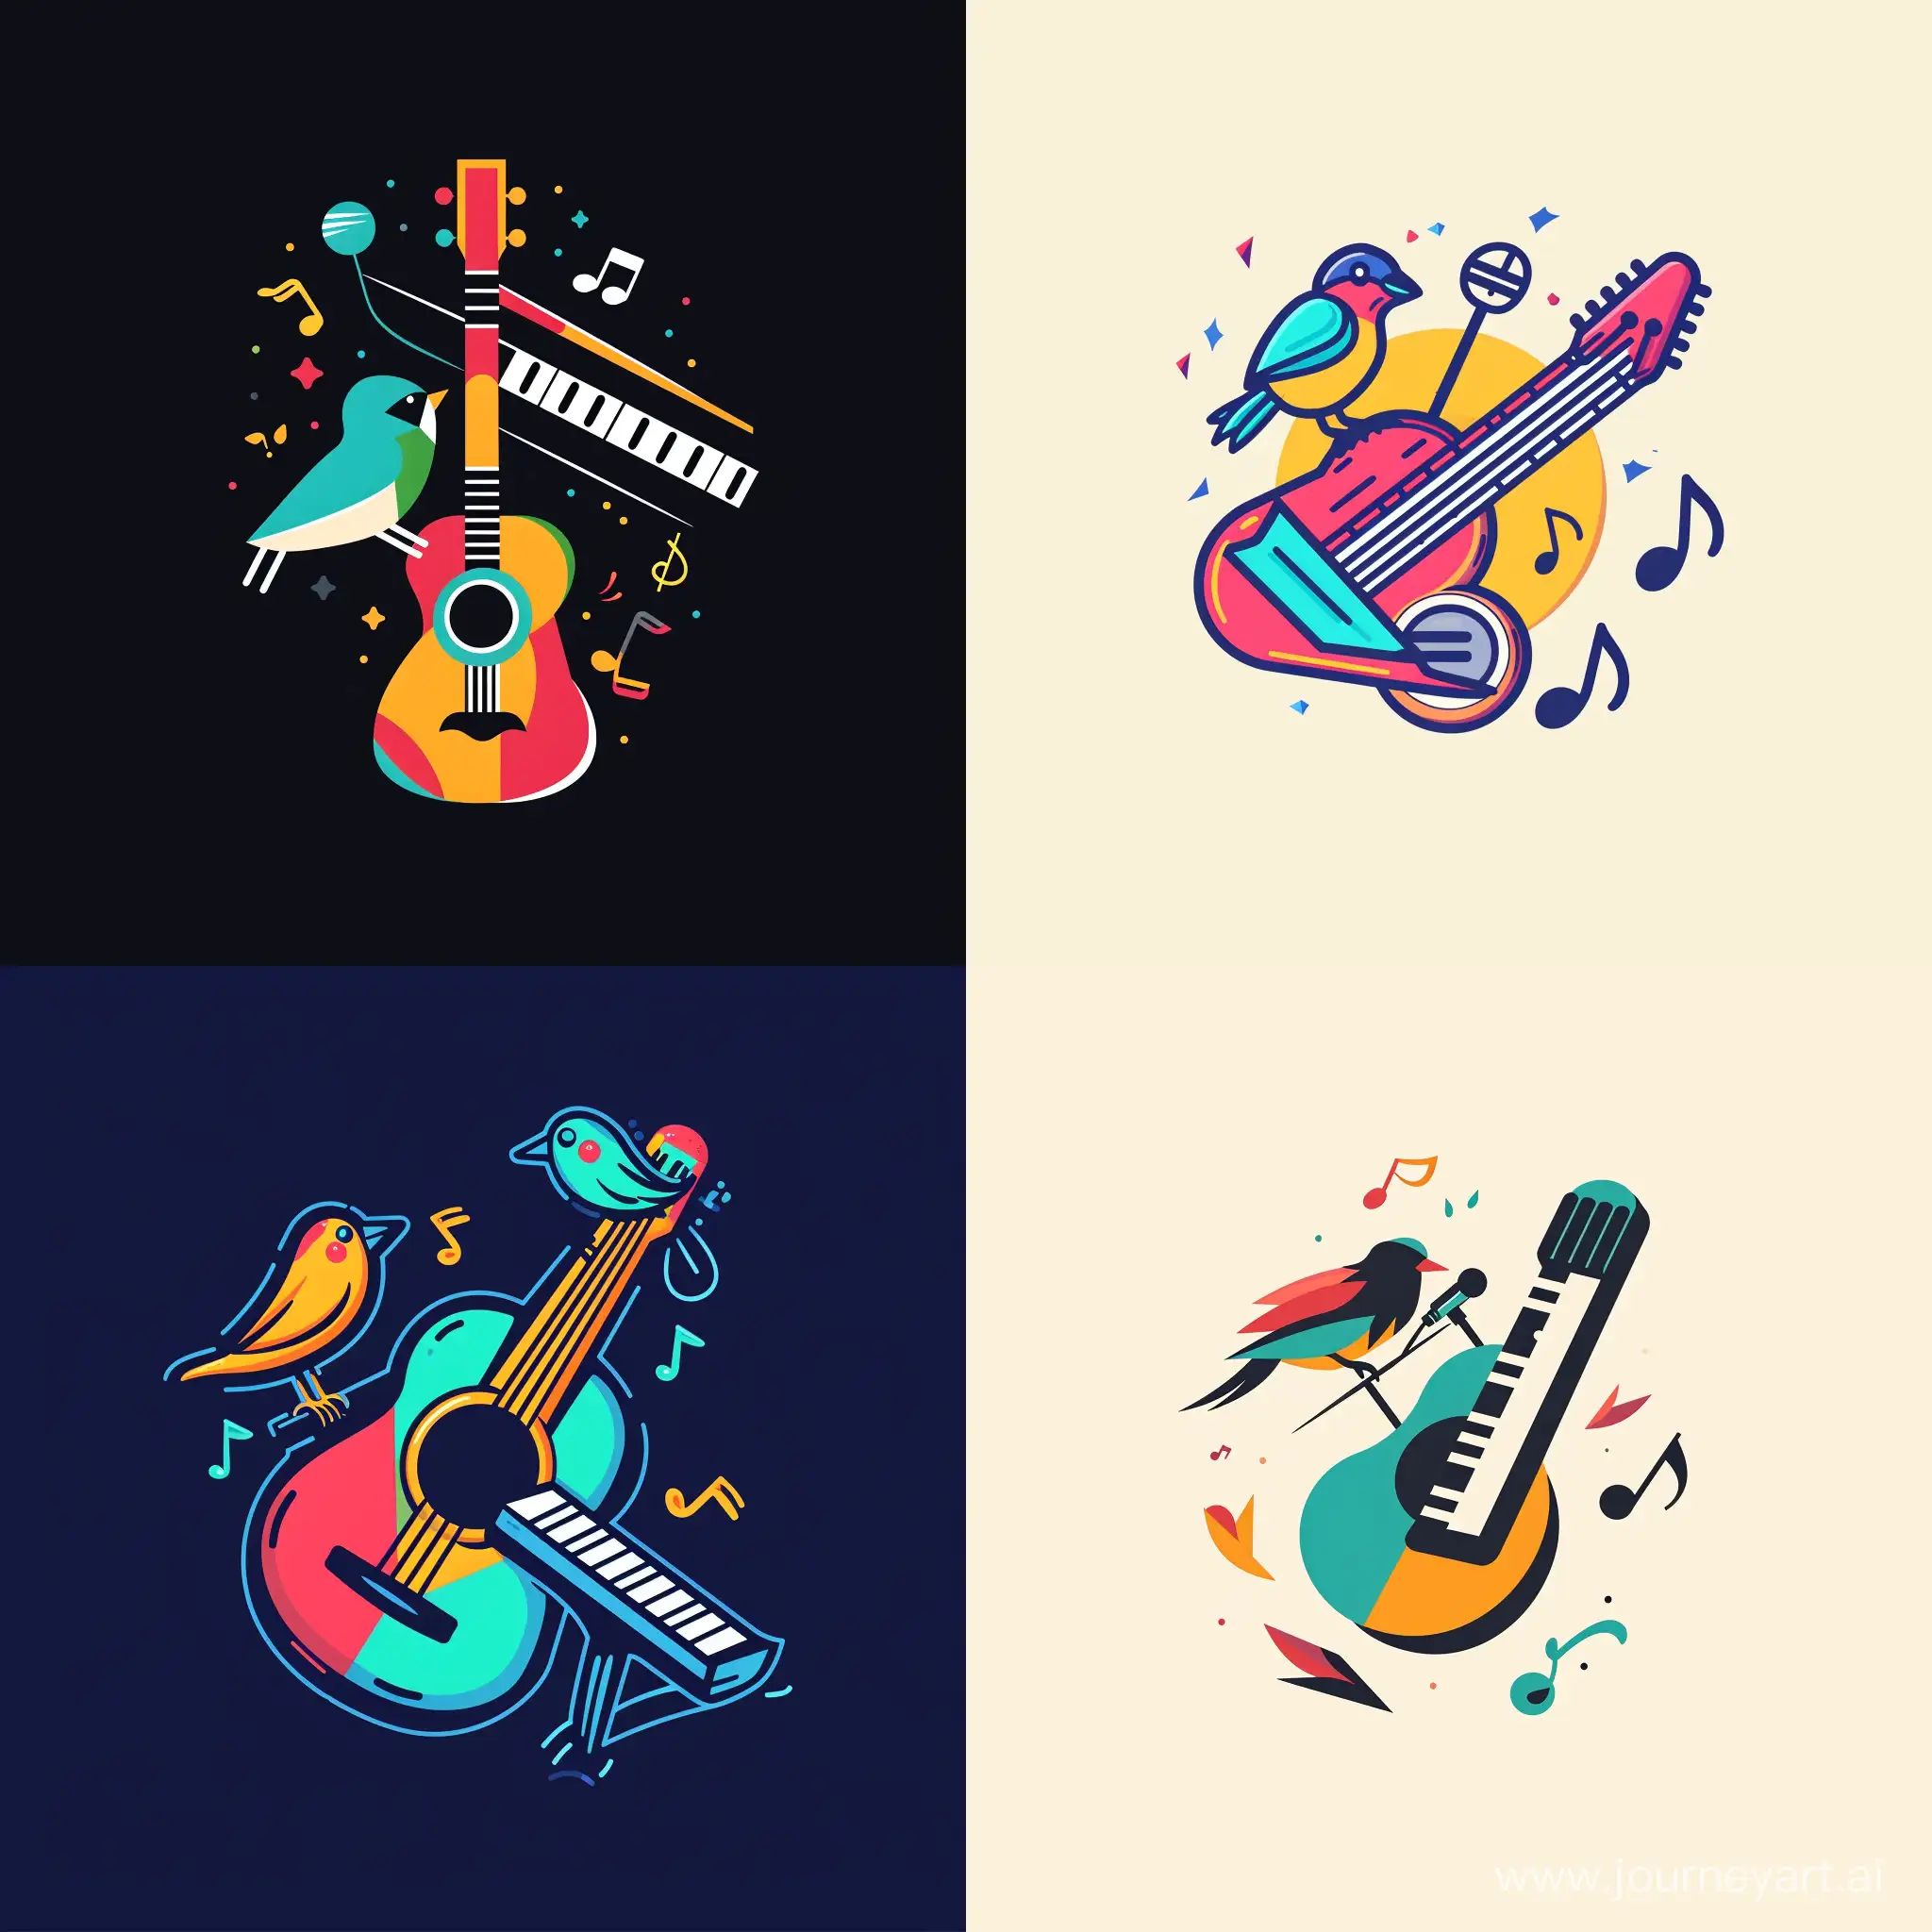 красочный логотип в стиле минимализм. посередине гитара под наклоном и вместо струн гитары пианино, а дырка на гитаре в виде микрофона. на гитаре сидит птичка и поёт, вокруг ноты